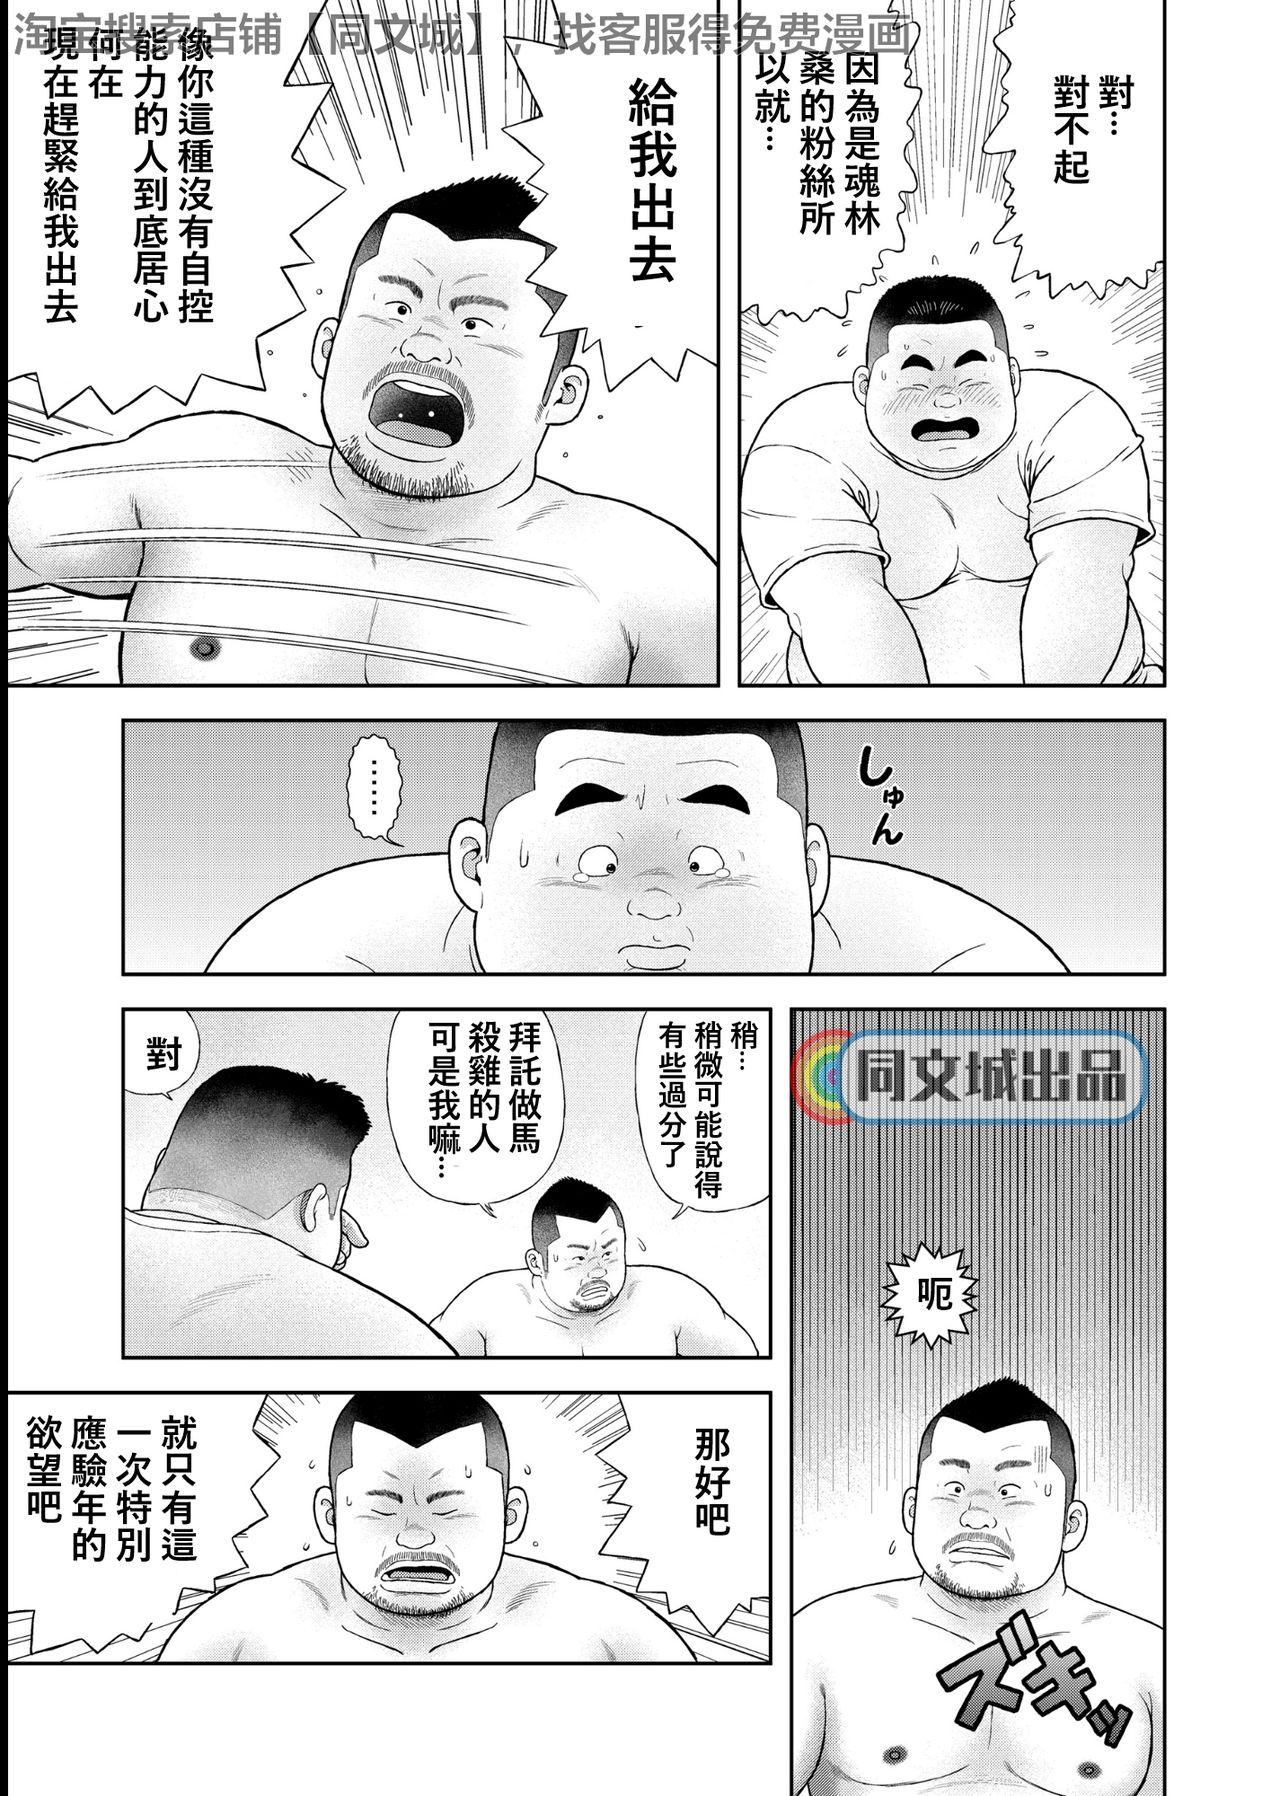 Prima Kunoyu Yonhatsume Geinin no Saga - Original Leggings - Page 11